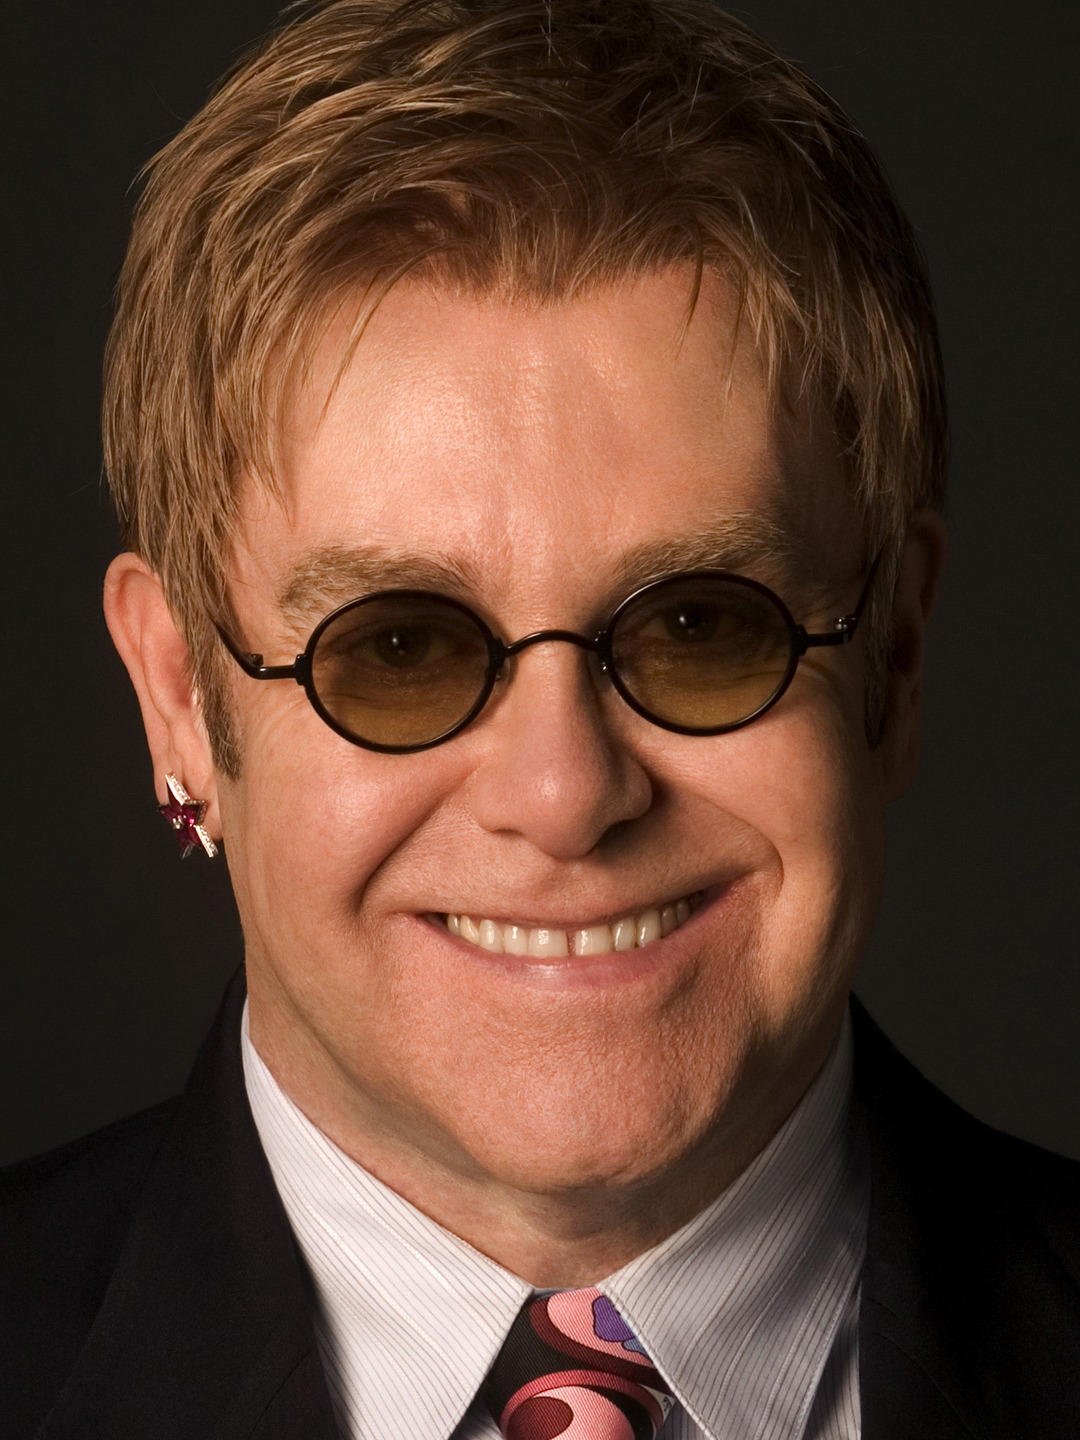 Elton John who is his father